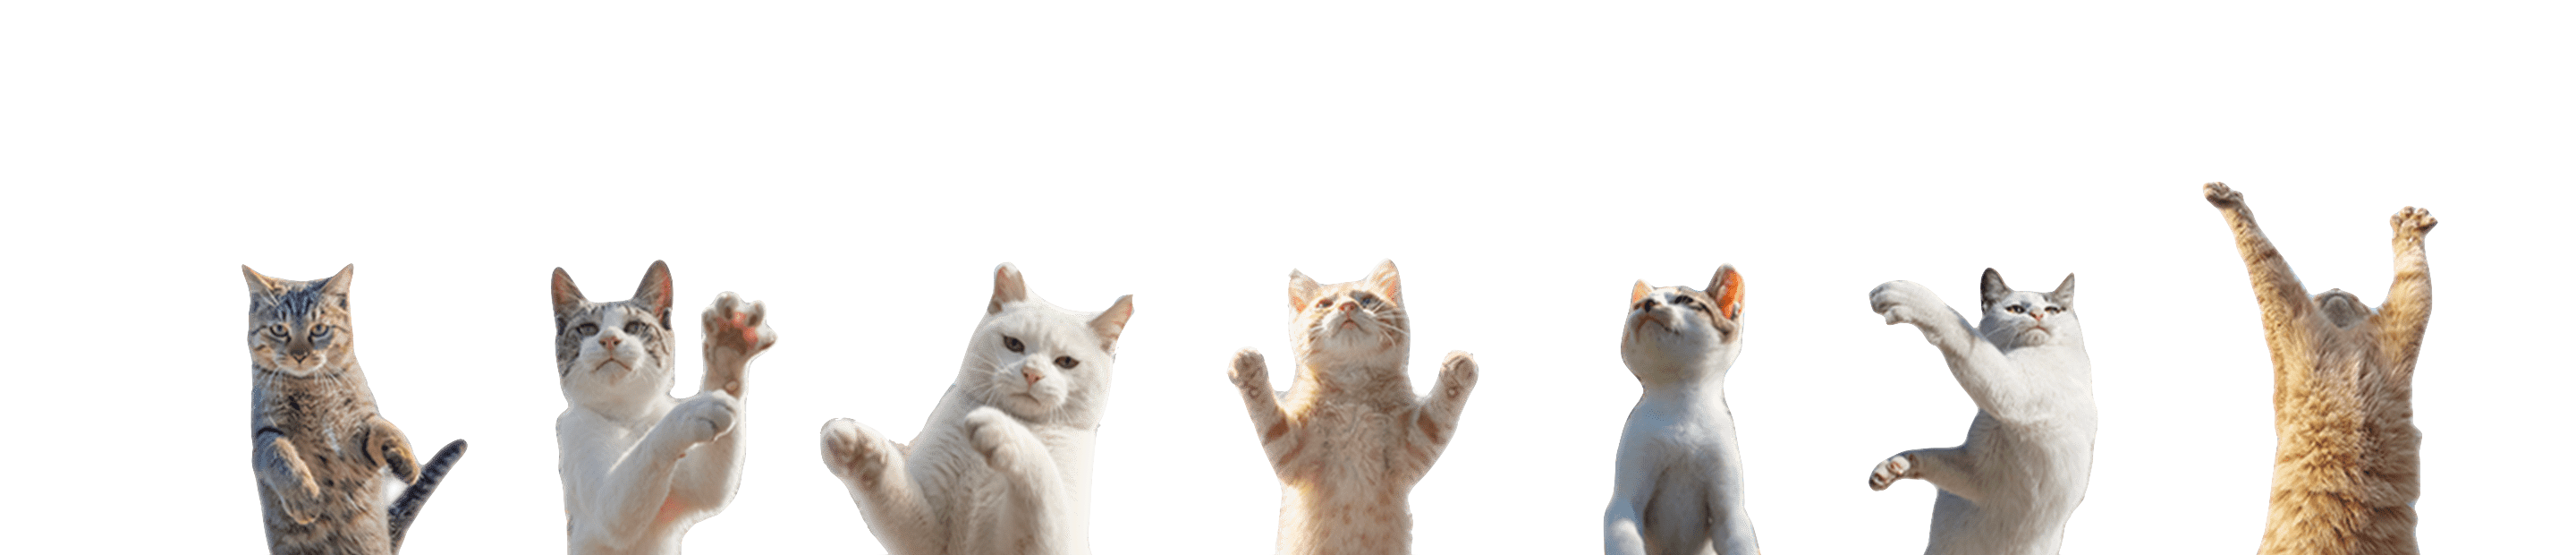 ★【クアトロガッツ×立ち猫キーケース】Get up!!猫のキーケース「立ち猫 〜GET UP 立ち上がれ！〜」猫写真家・山本正義「立ち猫」×クアトロガッツのコラボ第二弾。猫から学ぶ「ネガティブからポジティブへ！」